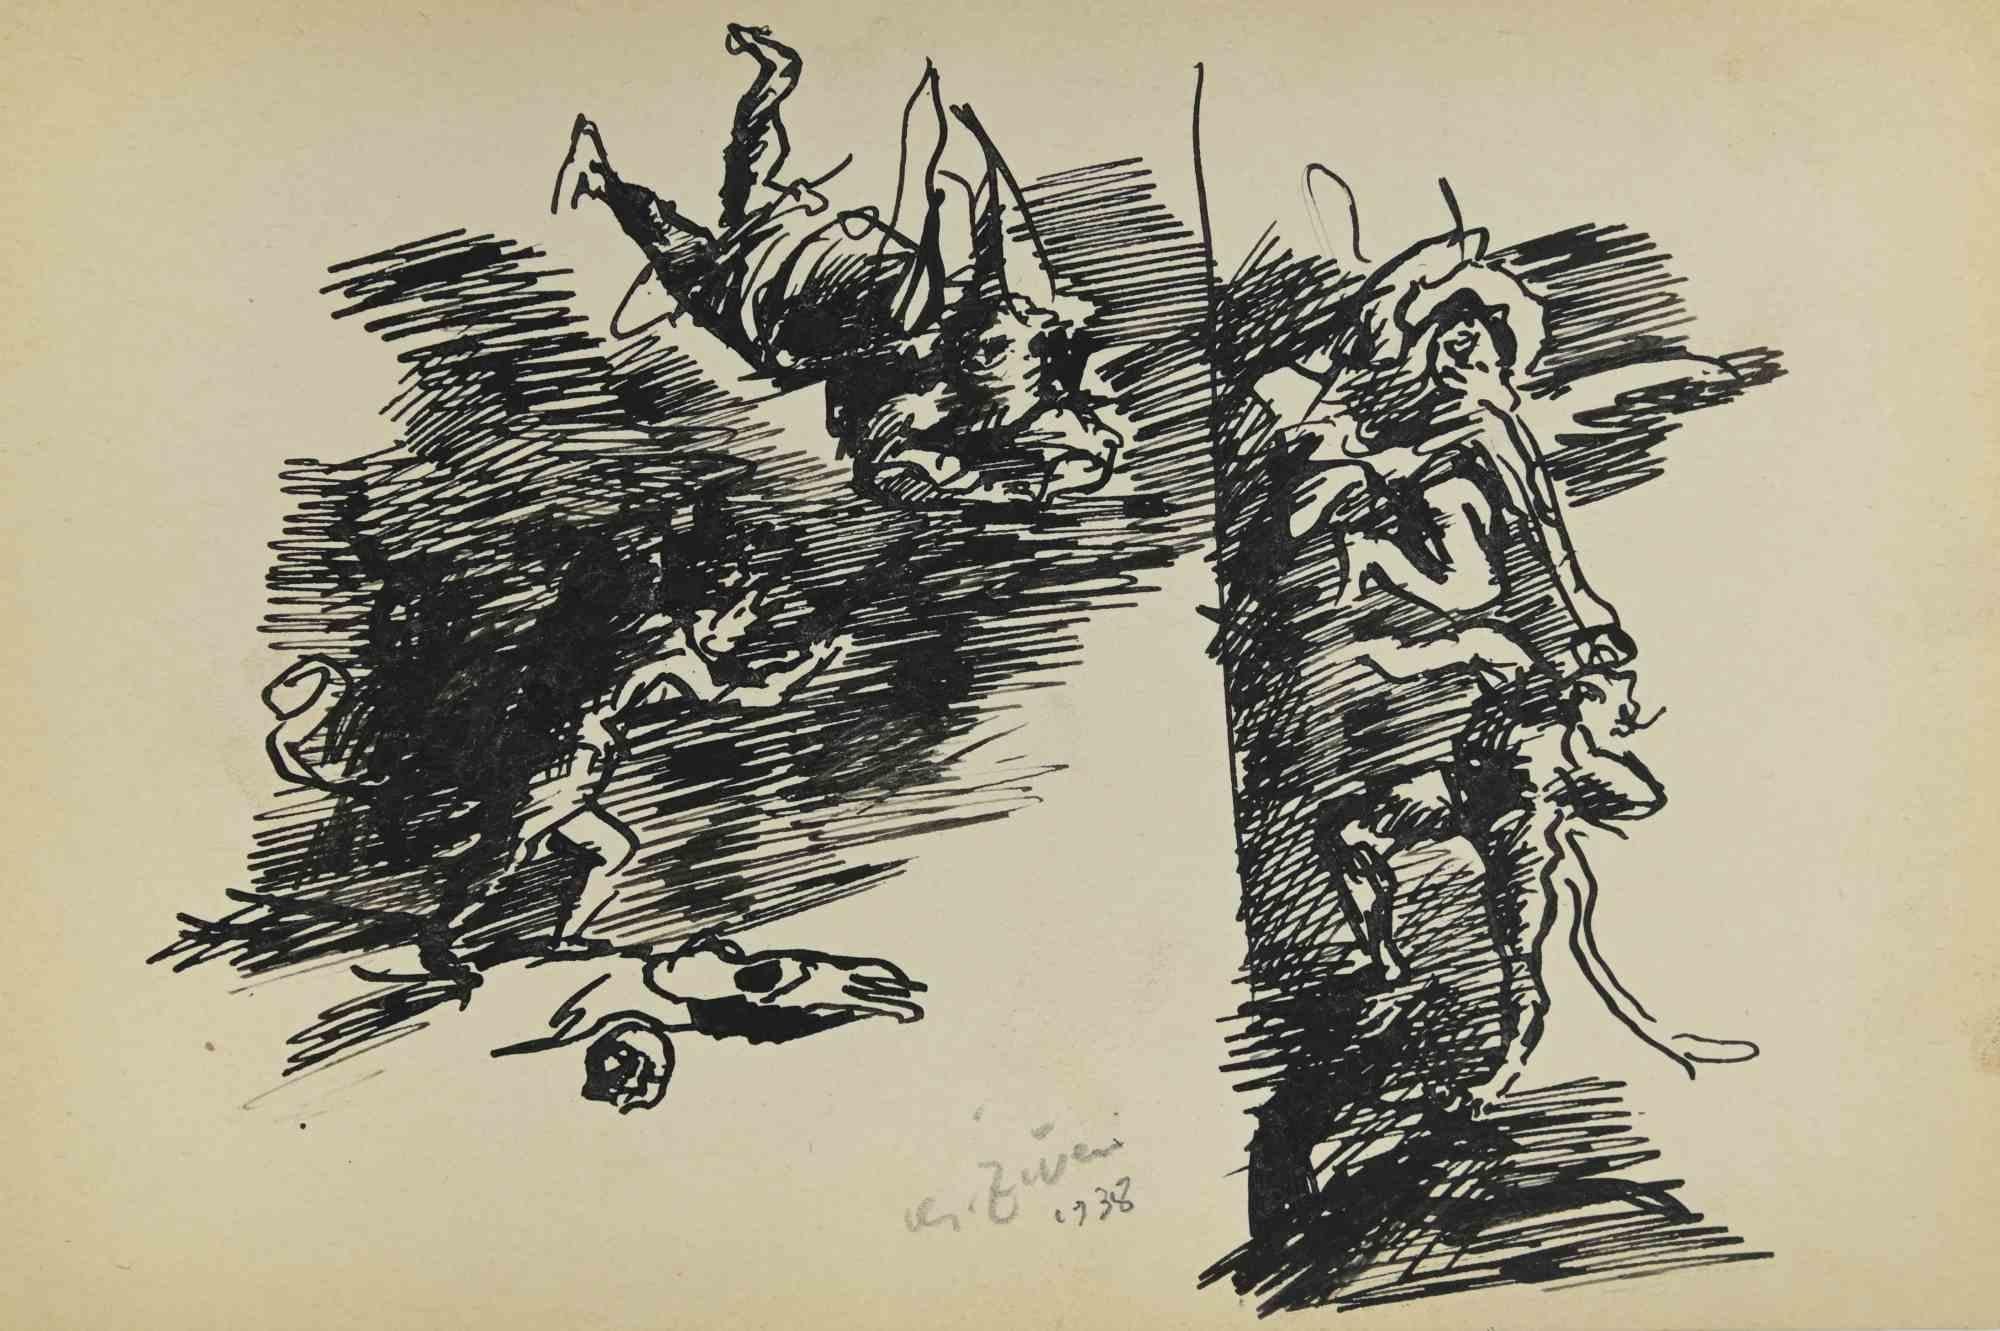 Die Figuren sind eine Zeichnung von Alberto Ziveri aus dem Jahr 1938.

Tinte auf Papier.

Handsigniert und datiert.

In gutem Zustand.

Das Kunstwerk wird durch geschickte Striche meisterhaft dargestellt.

Alberto Ziveri (Rom, 1908 - 1990), der